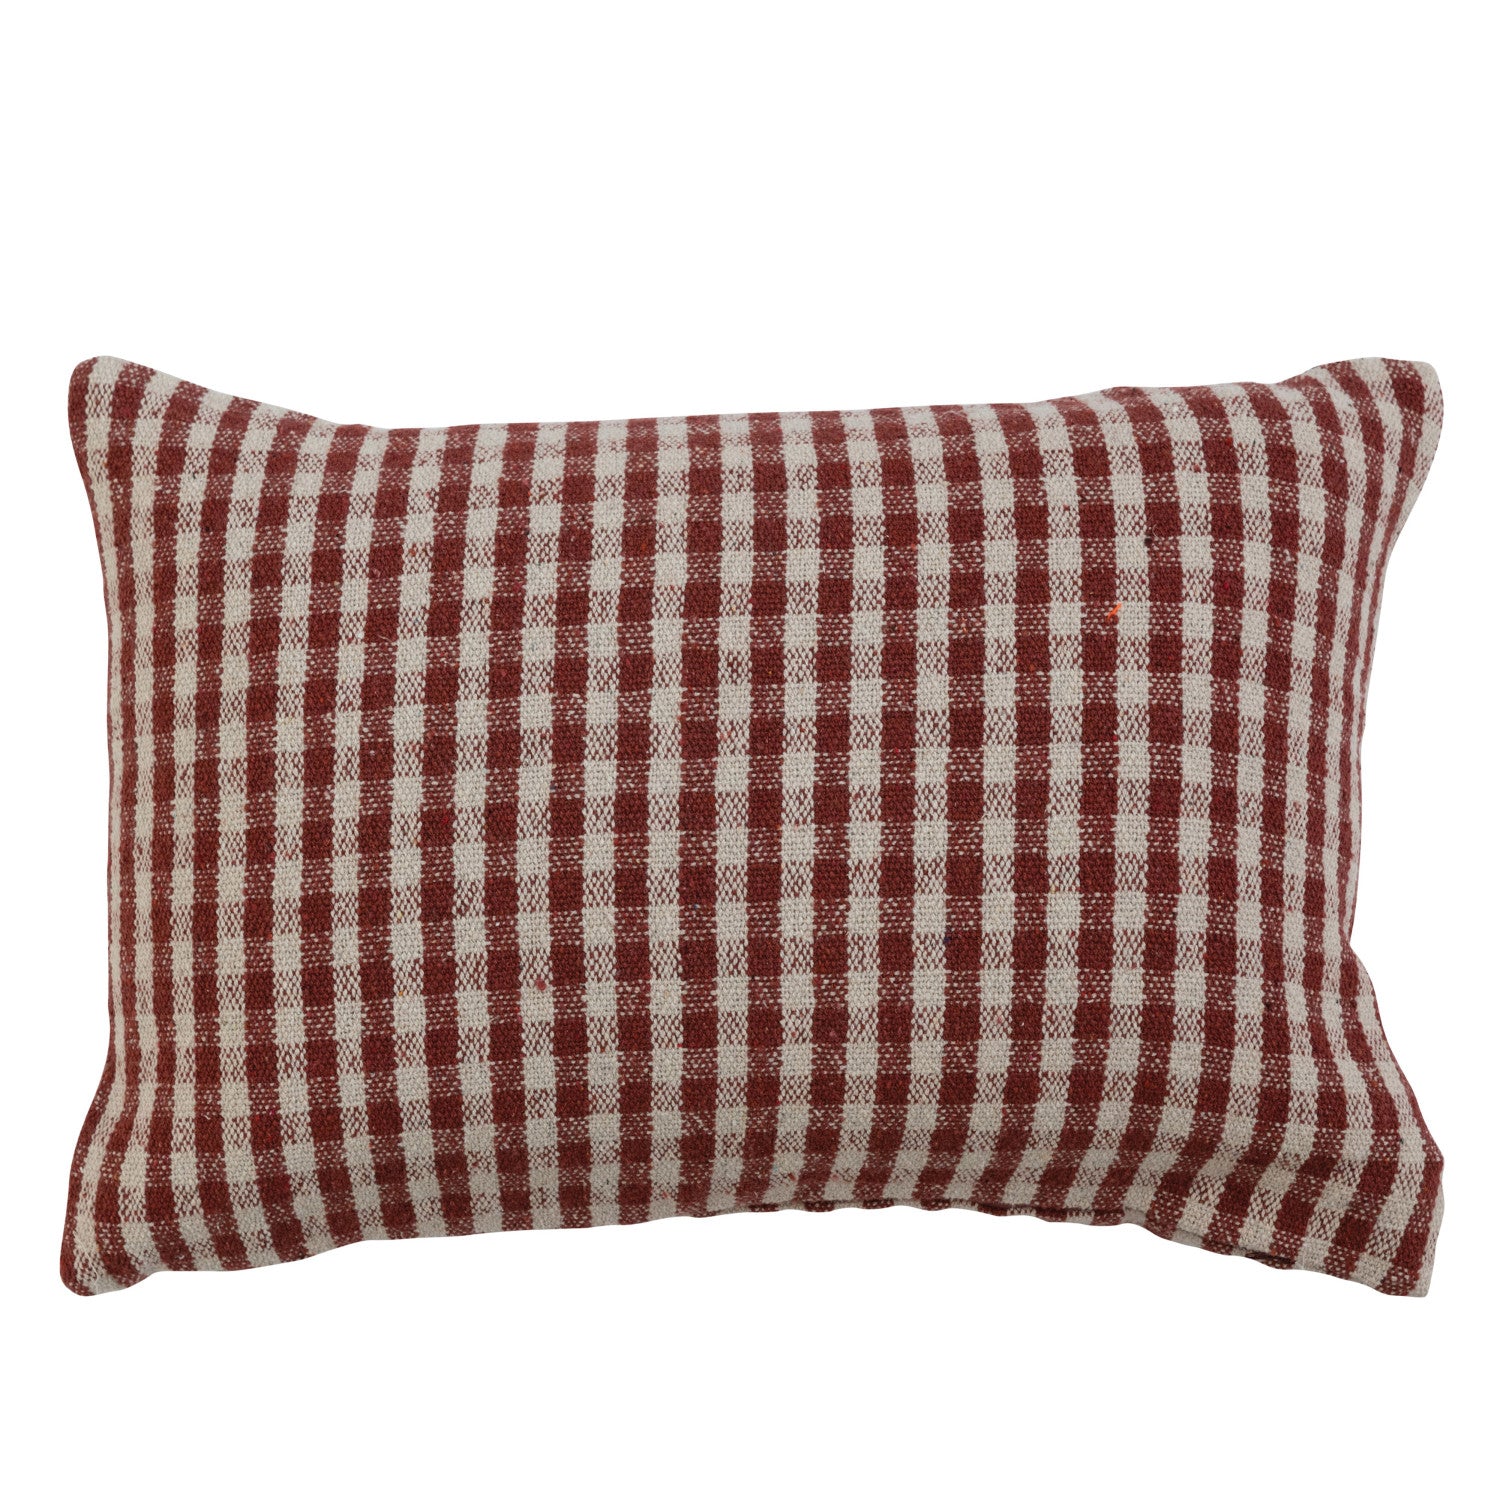 Rust Gingham Woven Pillow